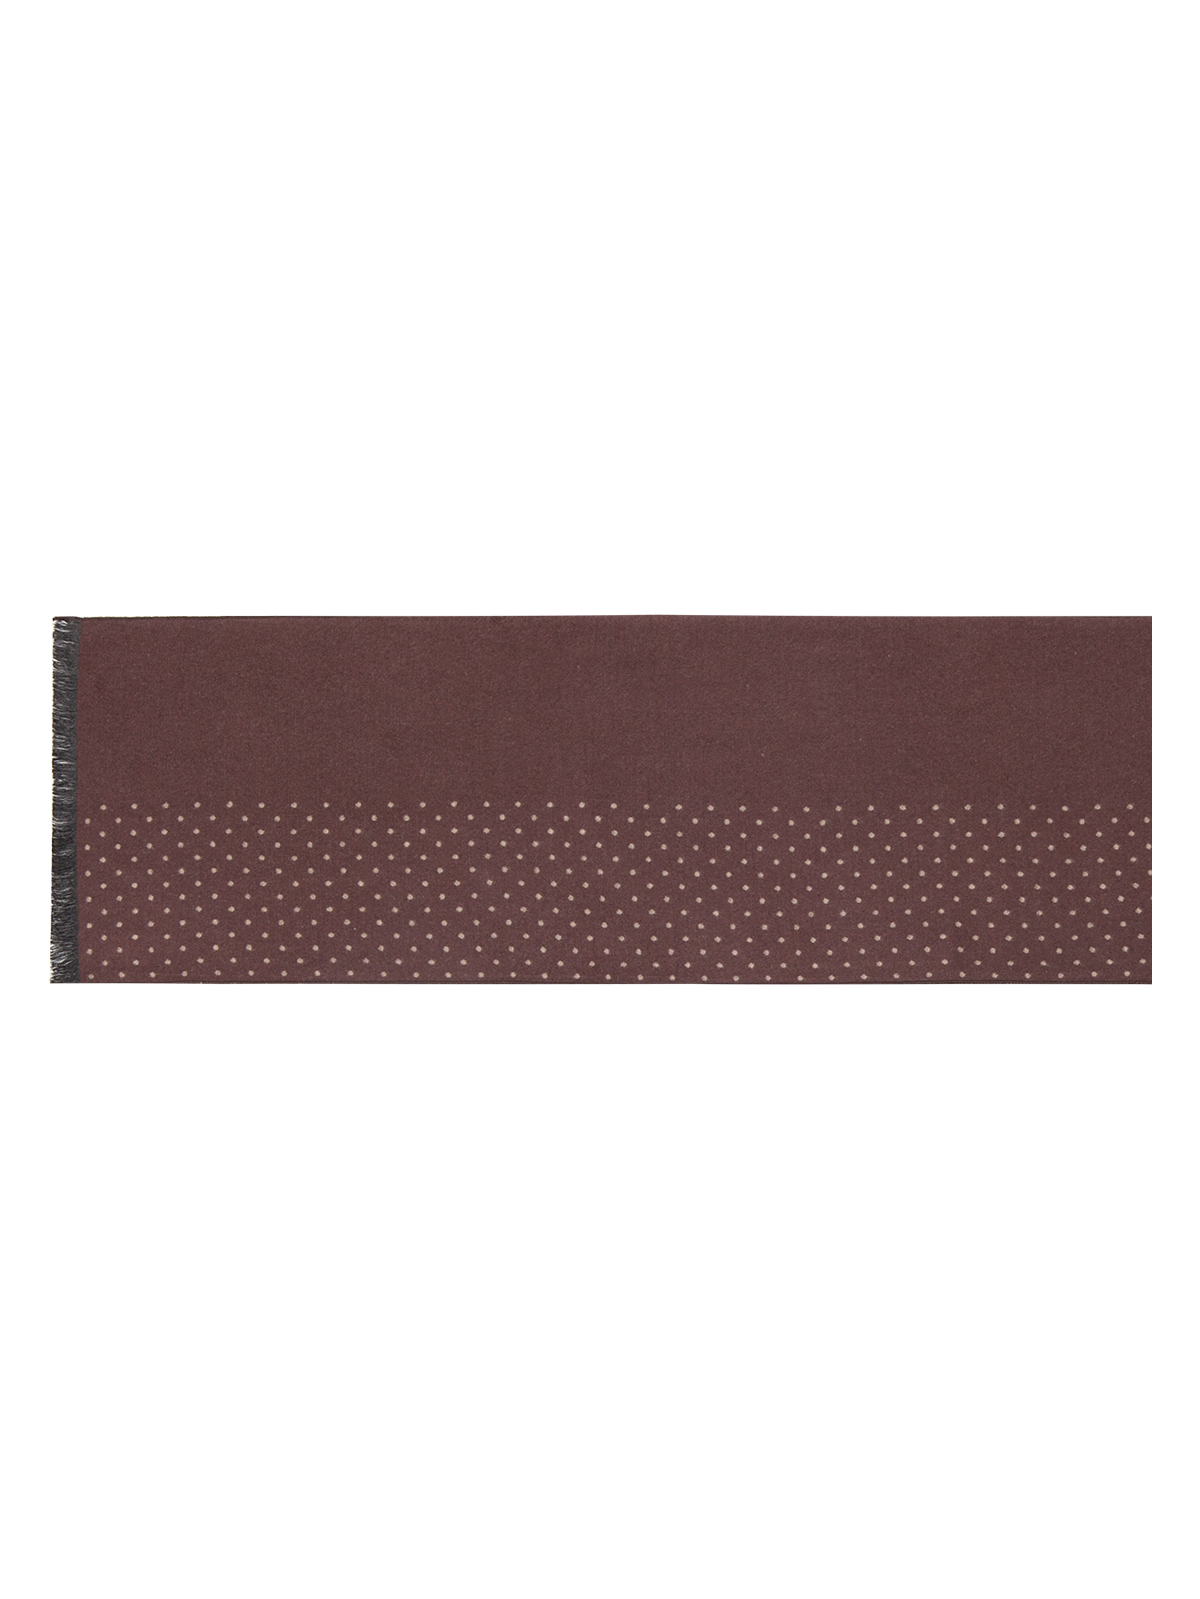 Шарф мужской Labbra, цвет: коричневый. LJG34-316. Размер 10 см х 180 см